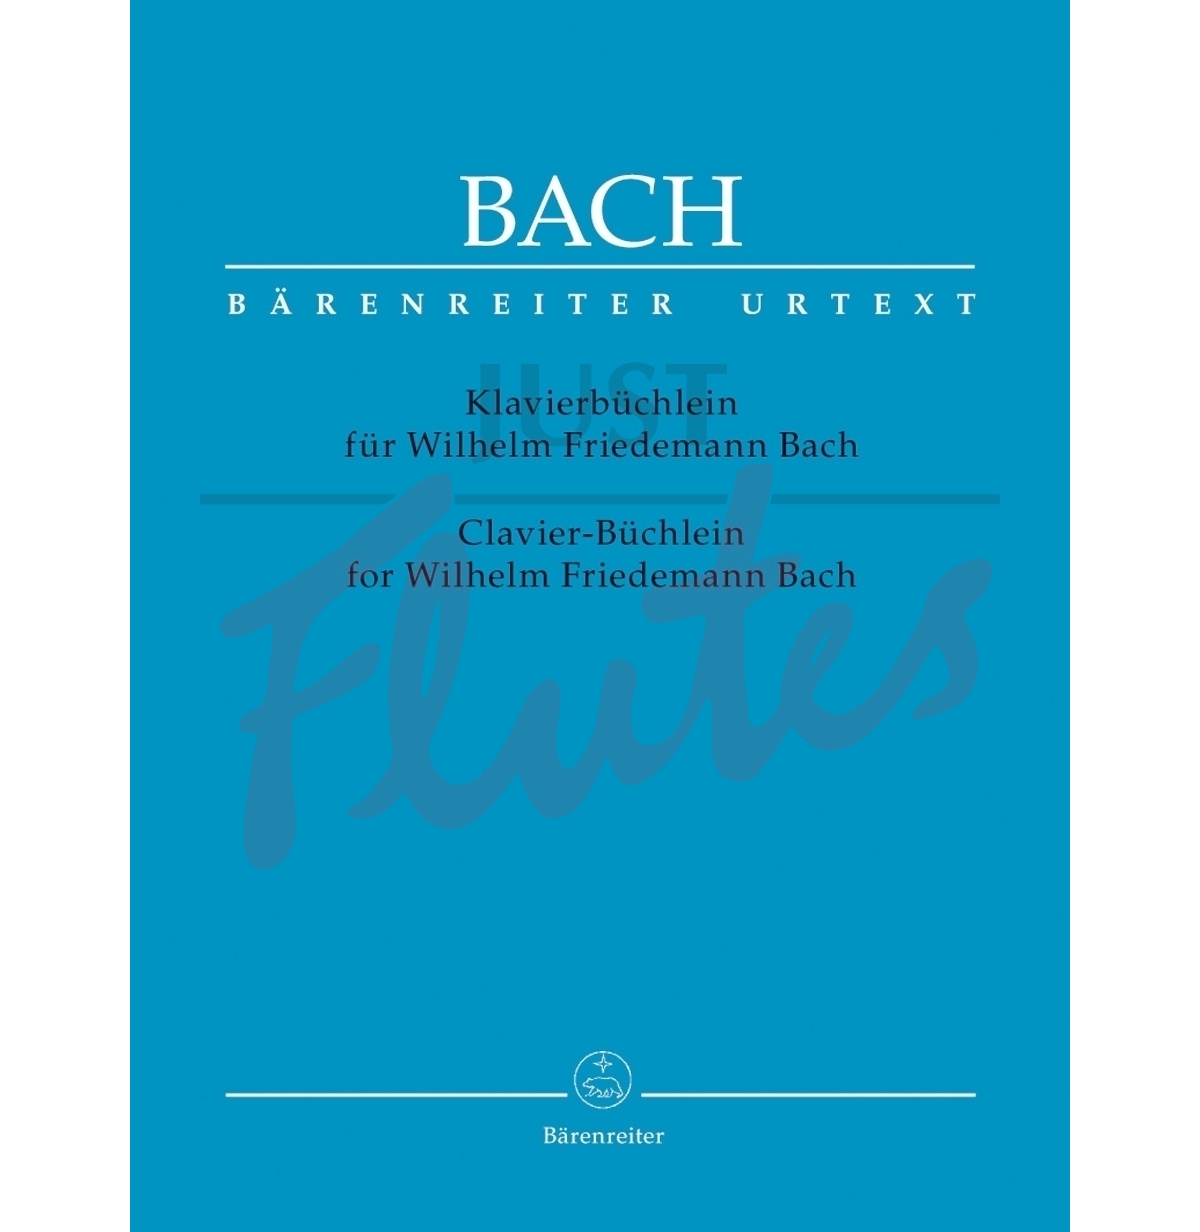 Clavier Buchlein for WF Bach